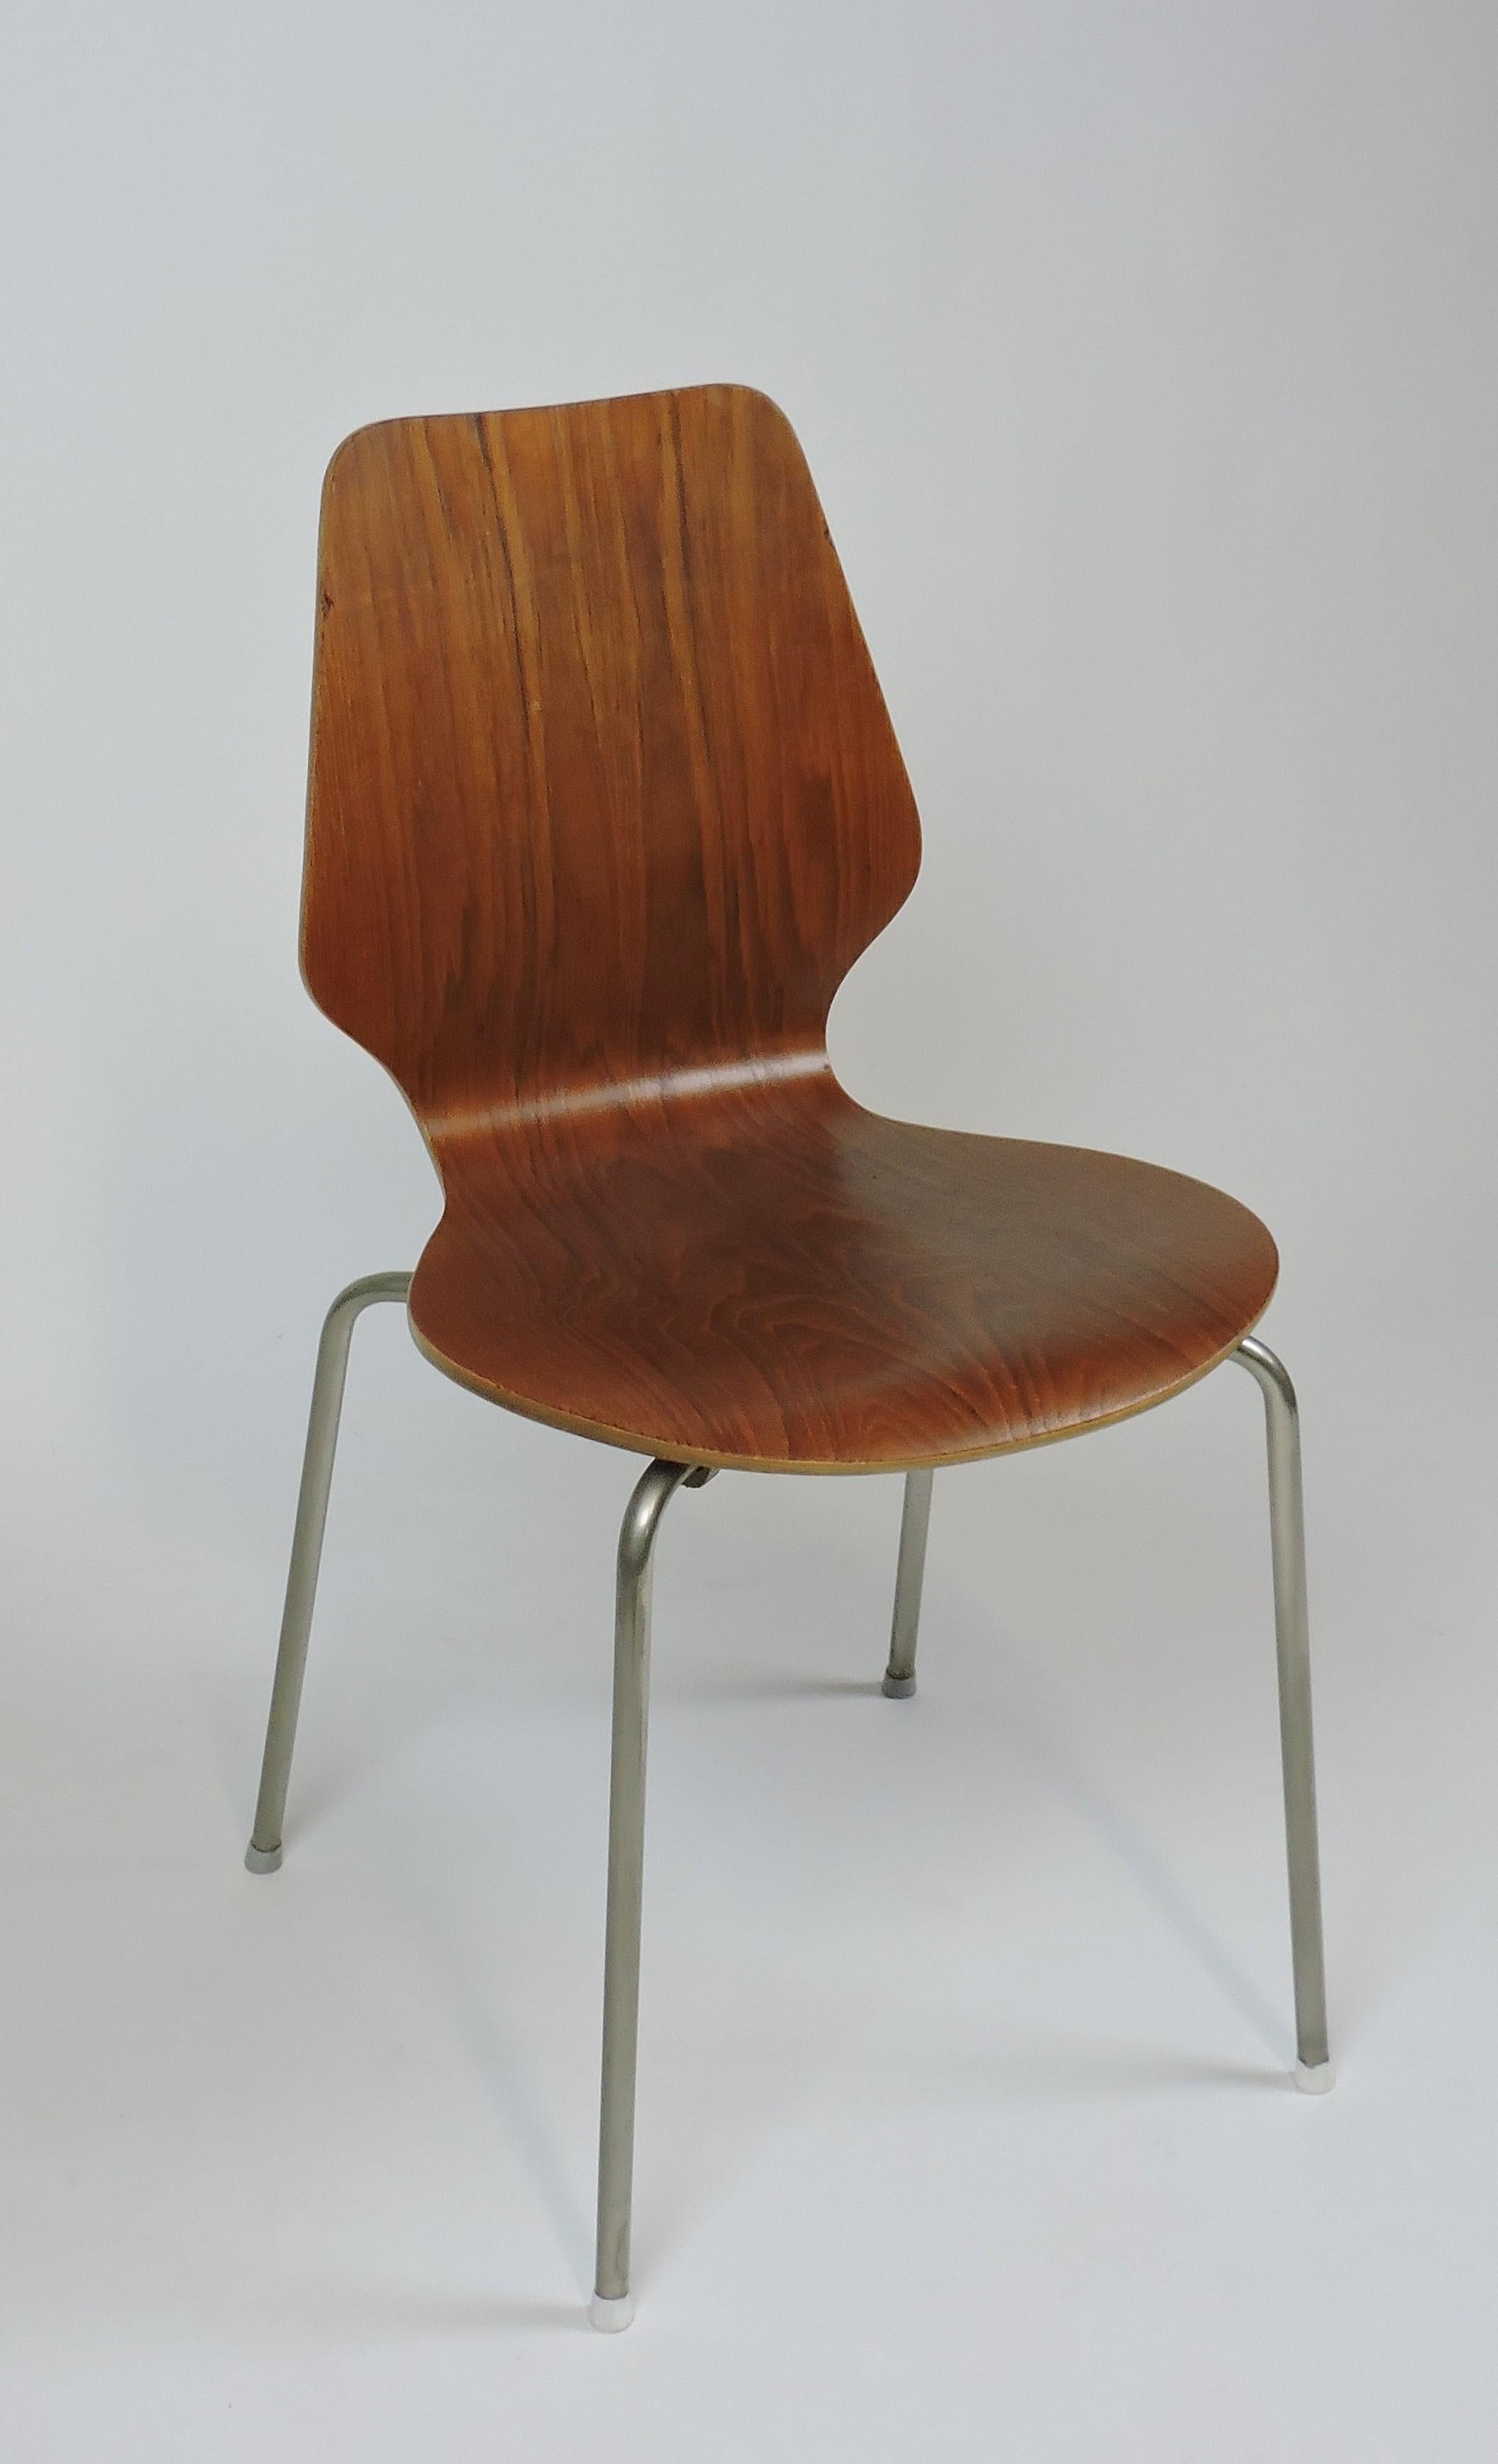 Sedia danese moderna di metà secolo in legno curvato con gambe in metallo. Leggero e resistente con bellissime venature del legno. Made in Denmark stampato sotto.